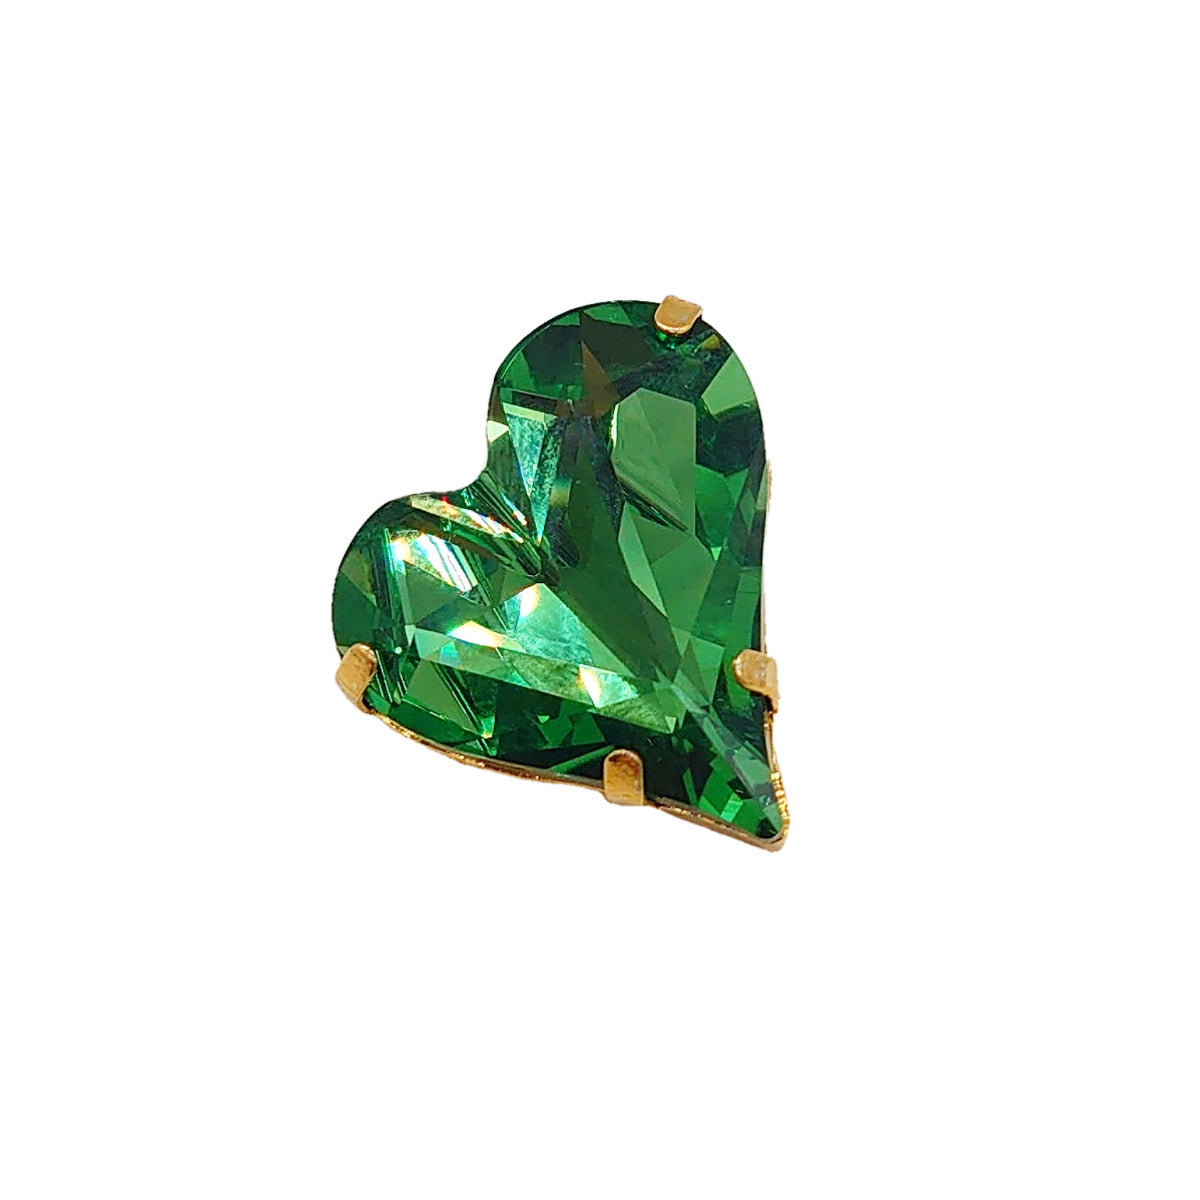 Green Swarovski Crystals Heart Lapel Brooch - TCG London